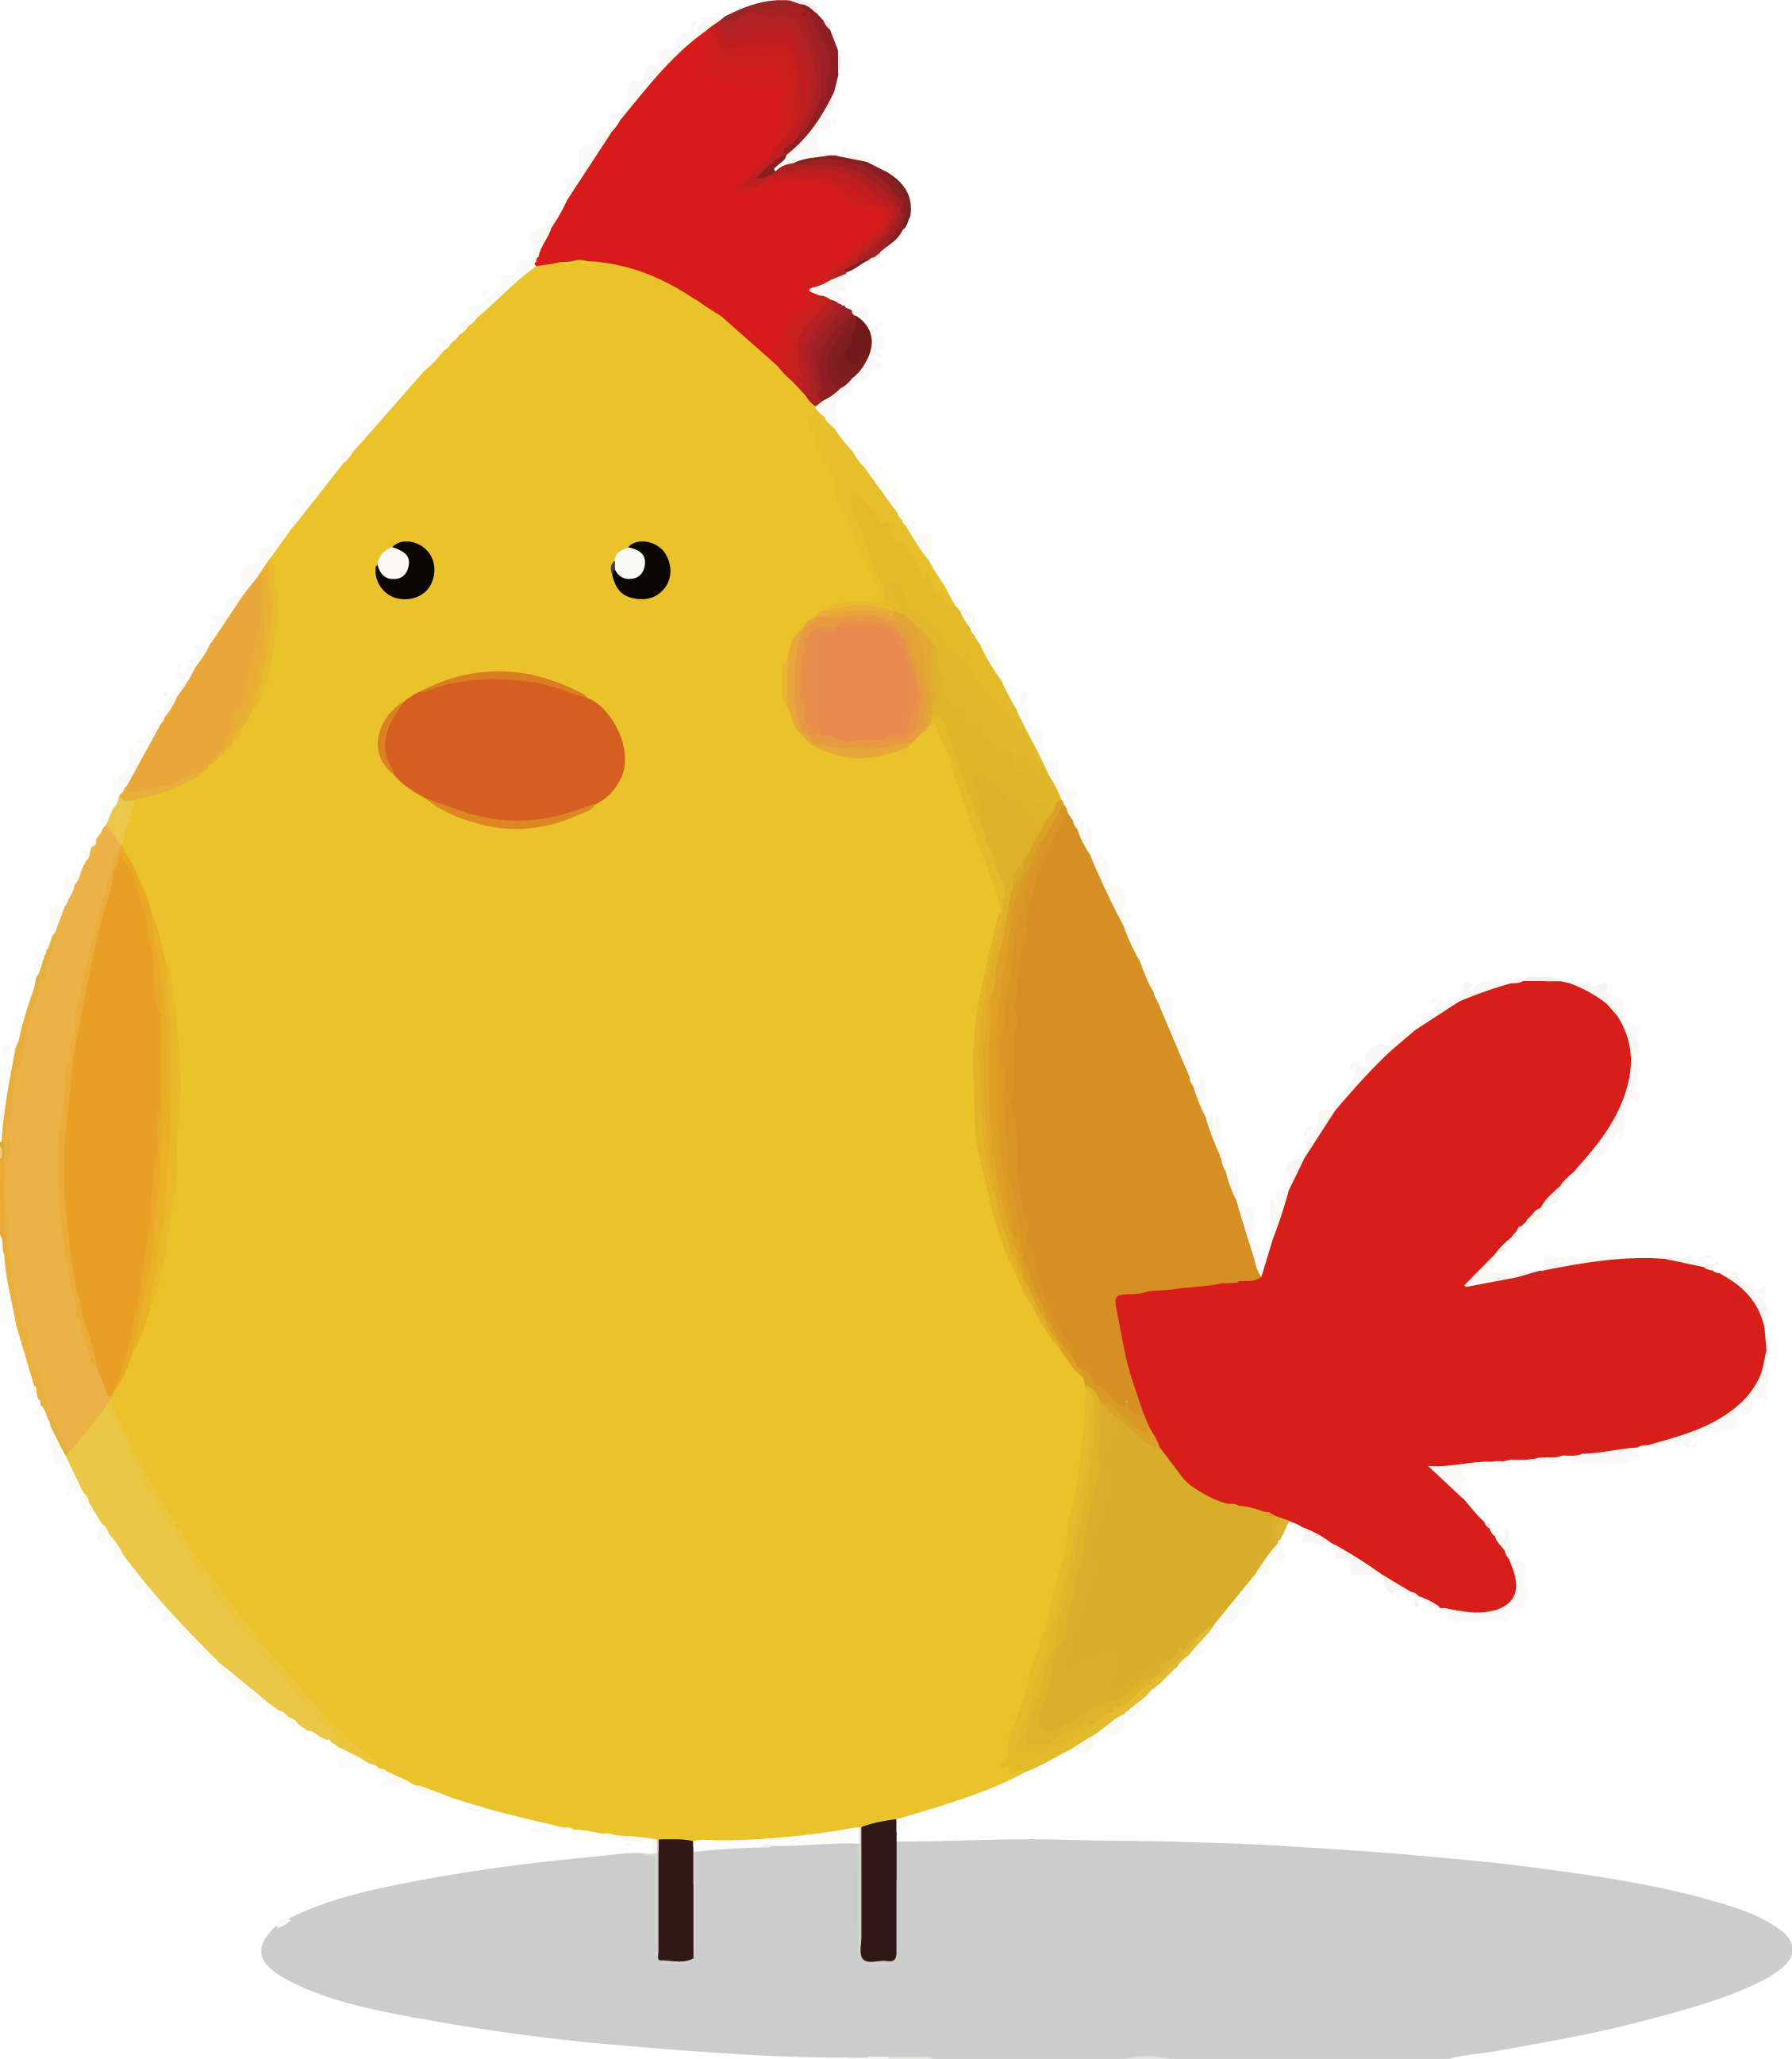 Chicken Adobe Illustrator Illustration - Chicken Adobe Illustrator Illustration (2258x2594)